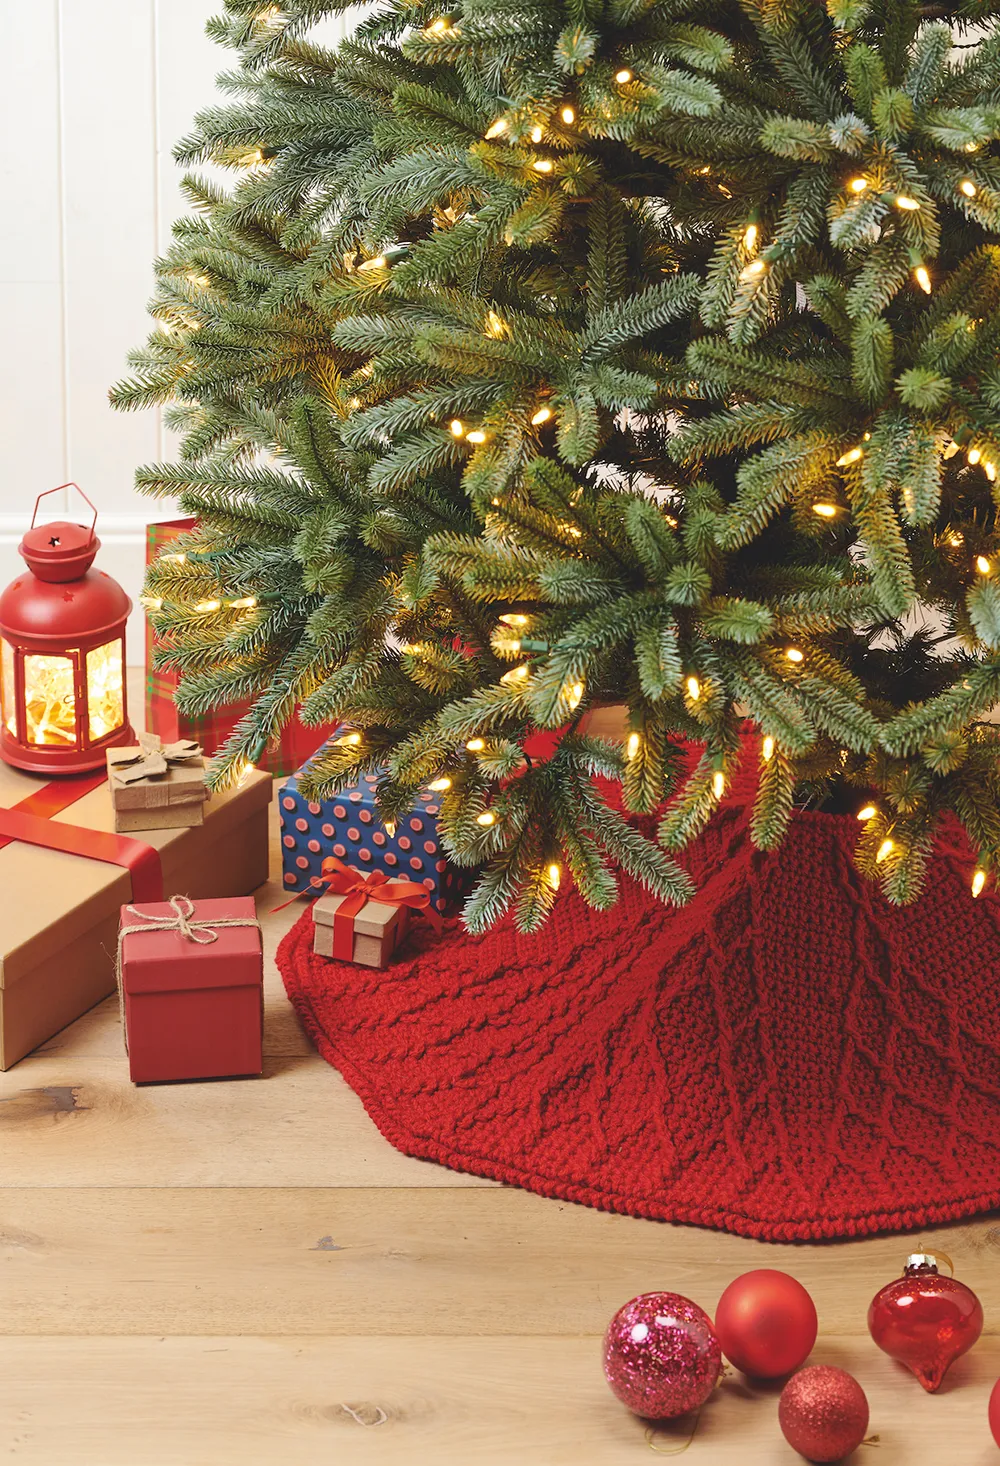 Make your own crochet Christmas tree skirt